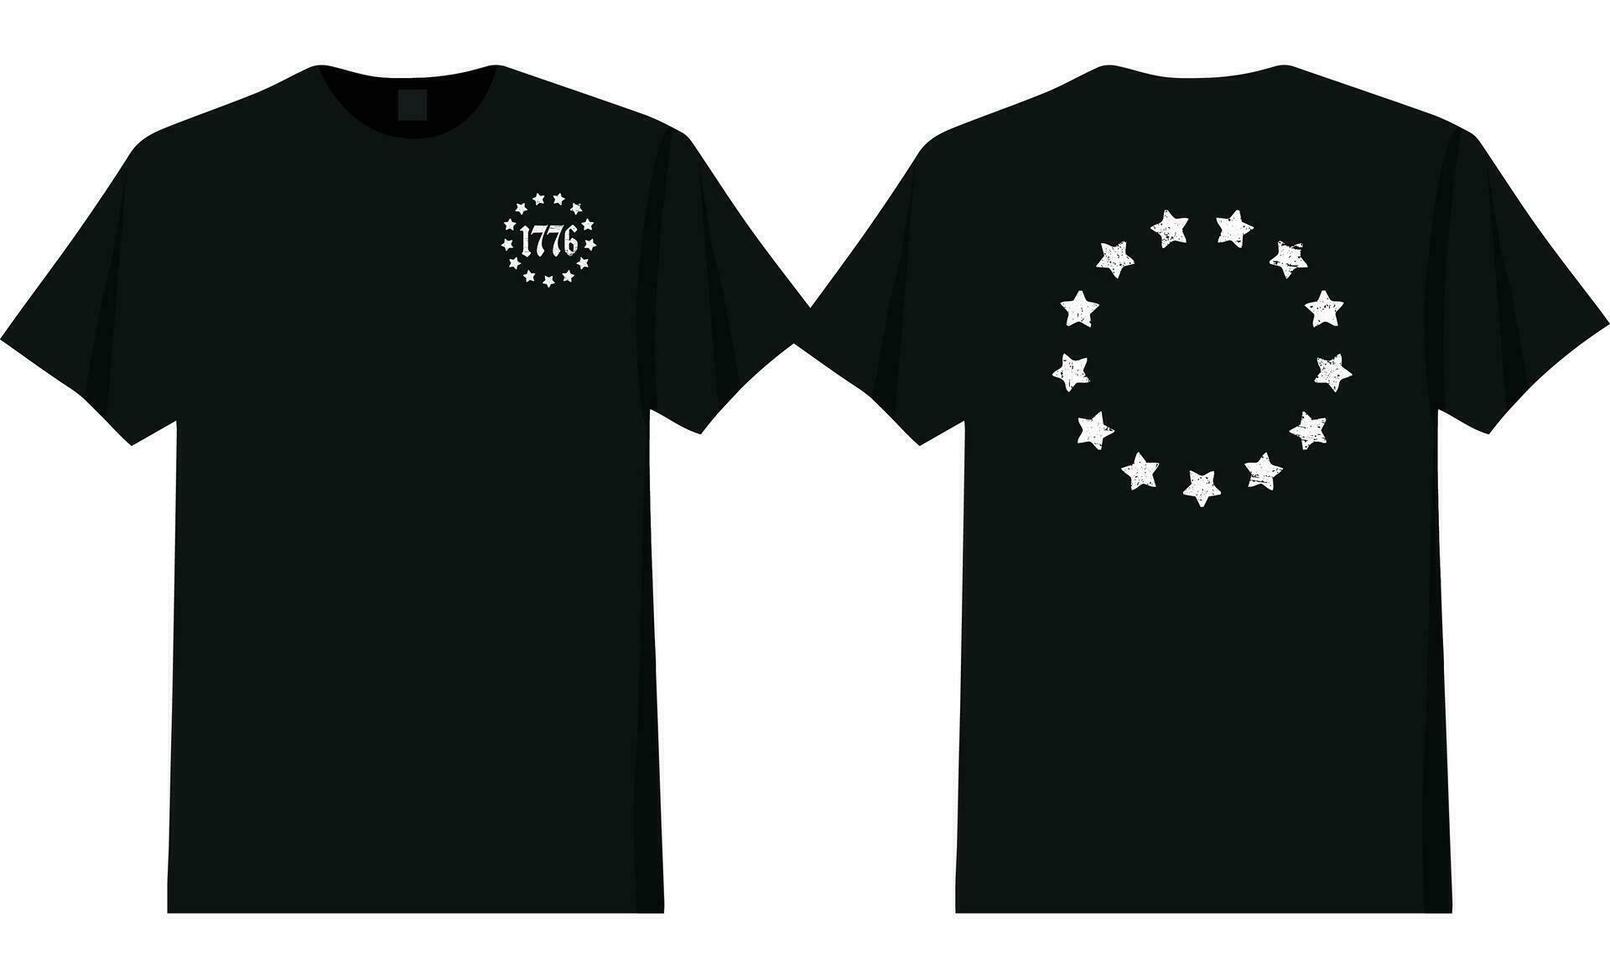 13 Sterne 1776 T-Shirt Design vektor